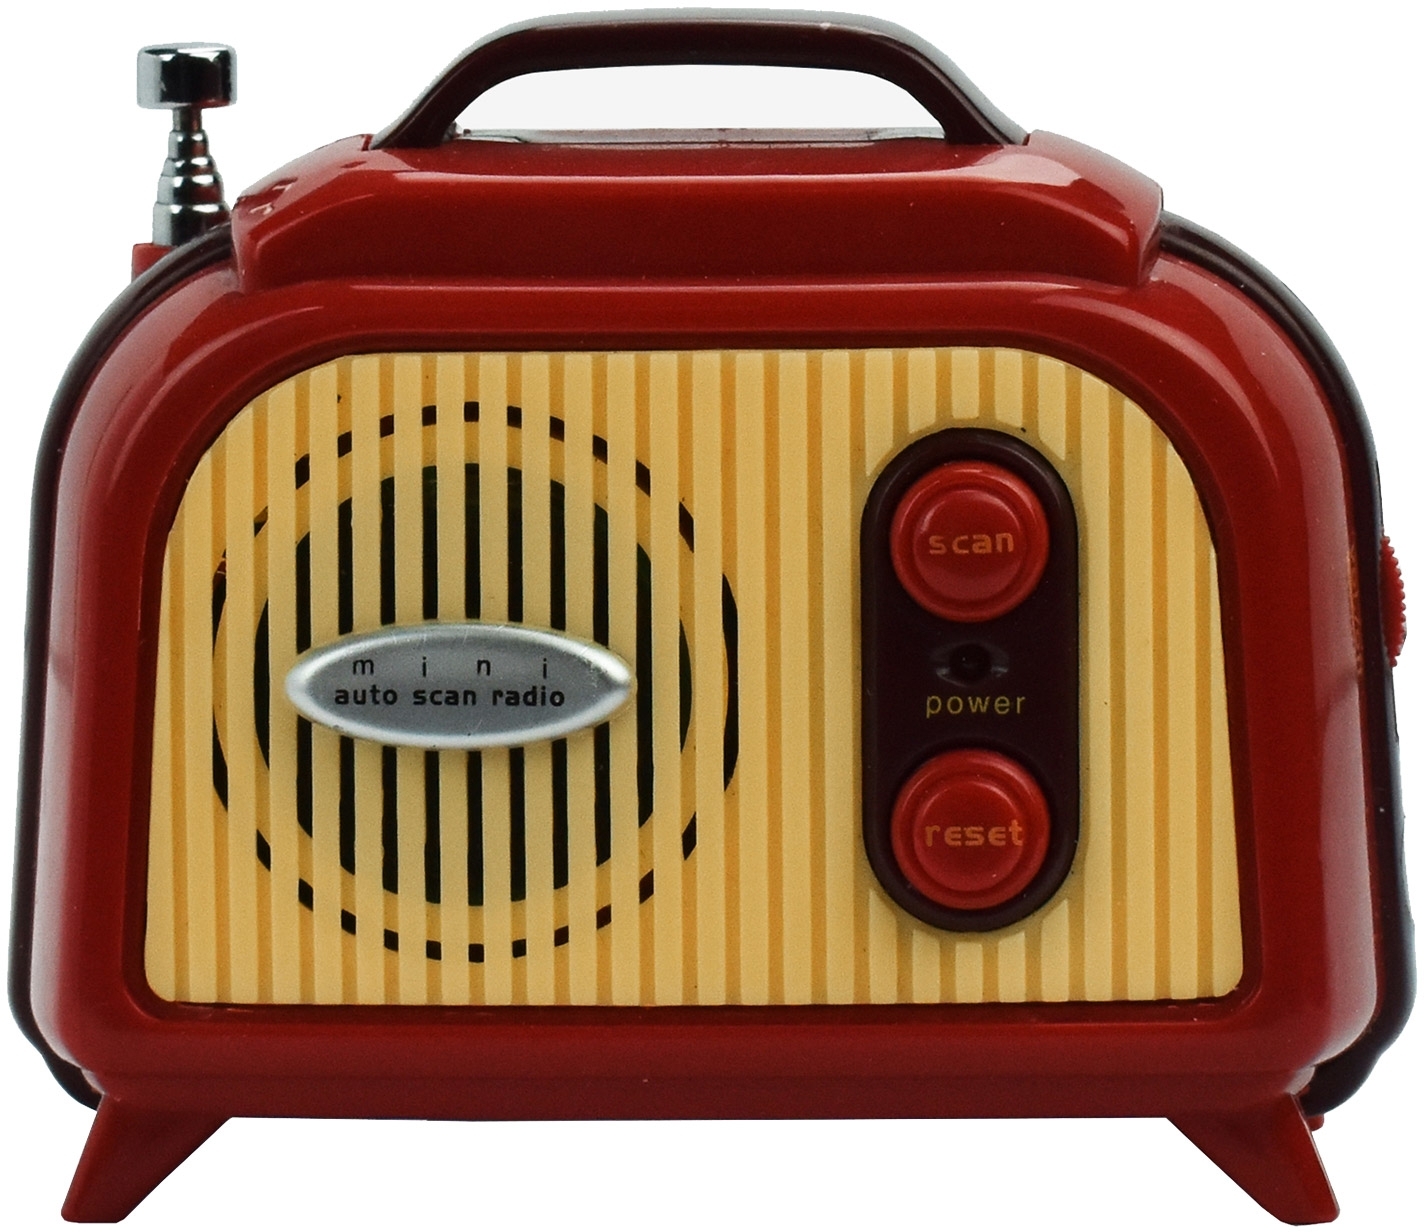 Legami Miniportable Radio Fm